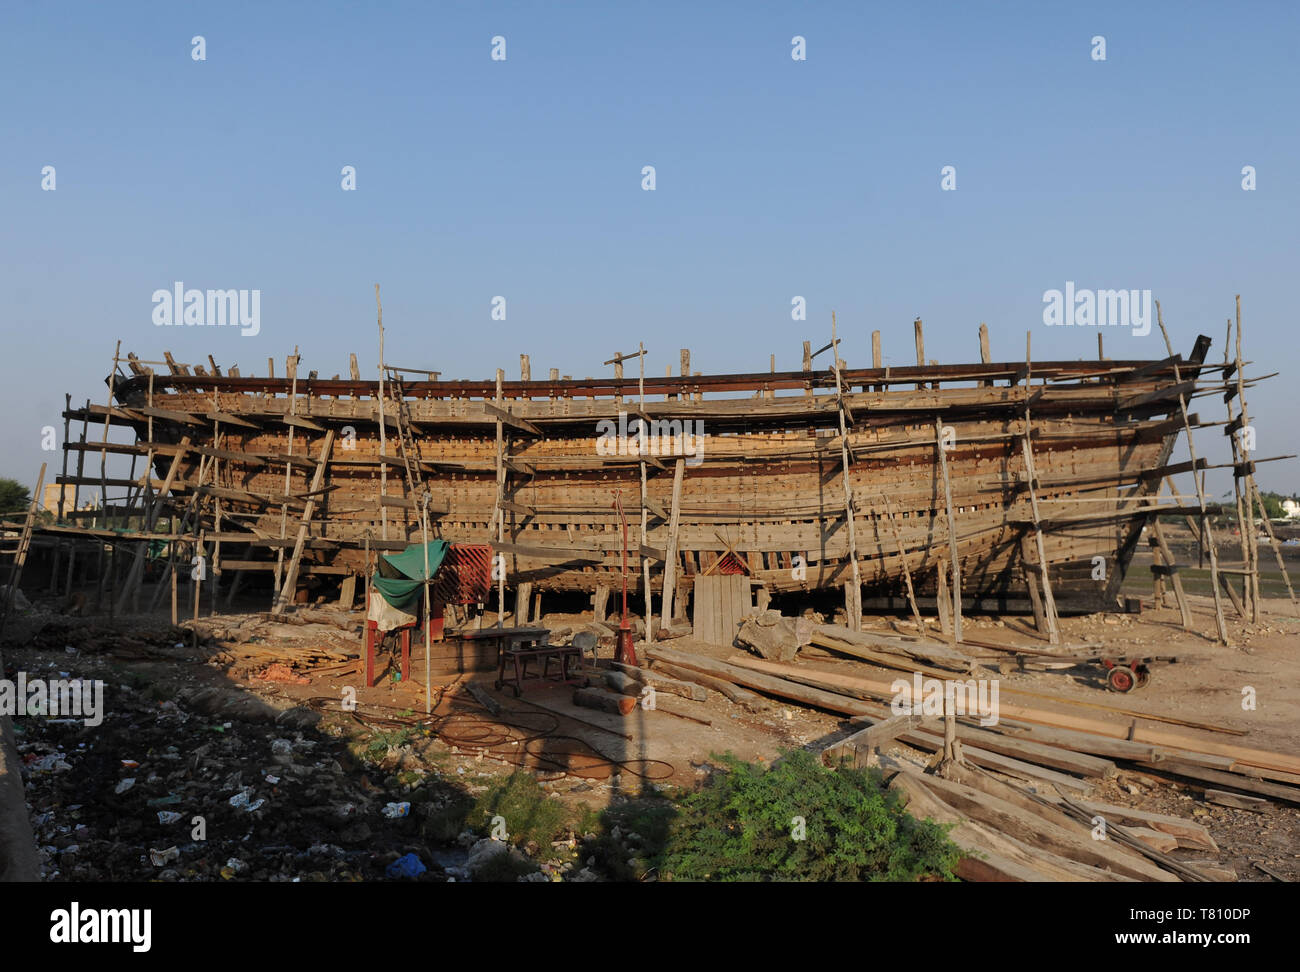 Ocean gehen Dhow, von Hand von Sal Holz in 400 Jahre alten Tradition gebaut, auf dem Fluss, Rukmavati Mandvi, Gujarat, Indien, Asien Stockfoto